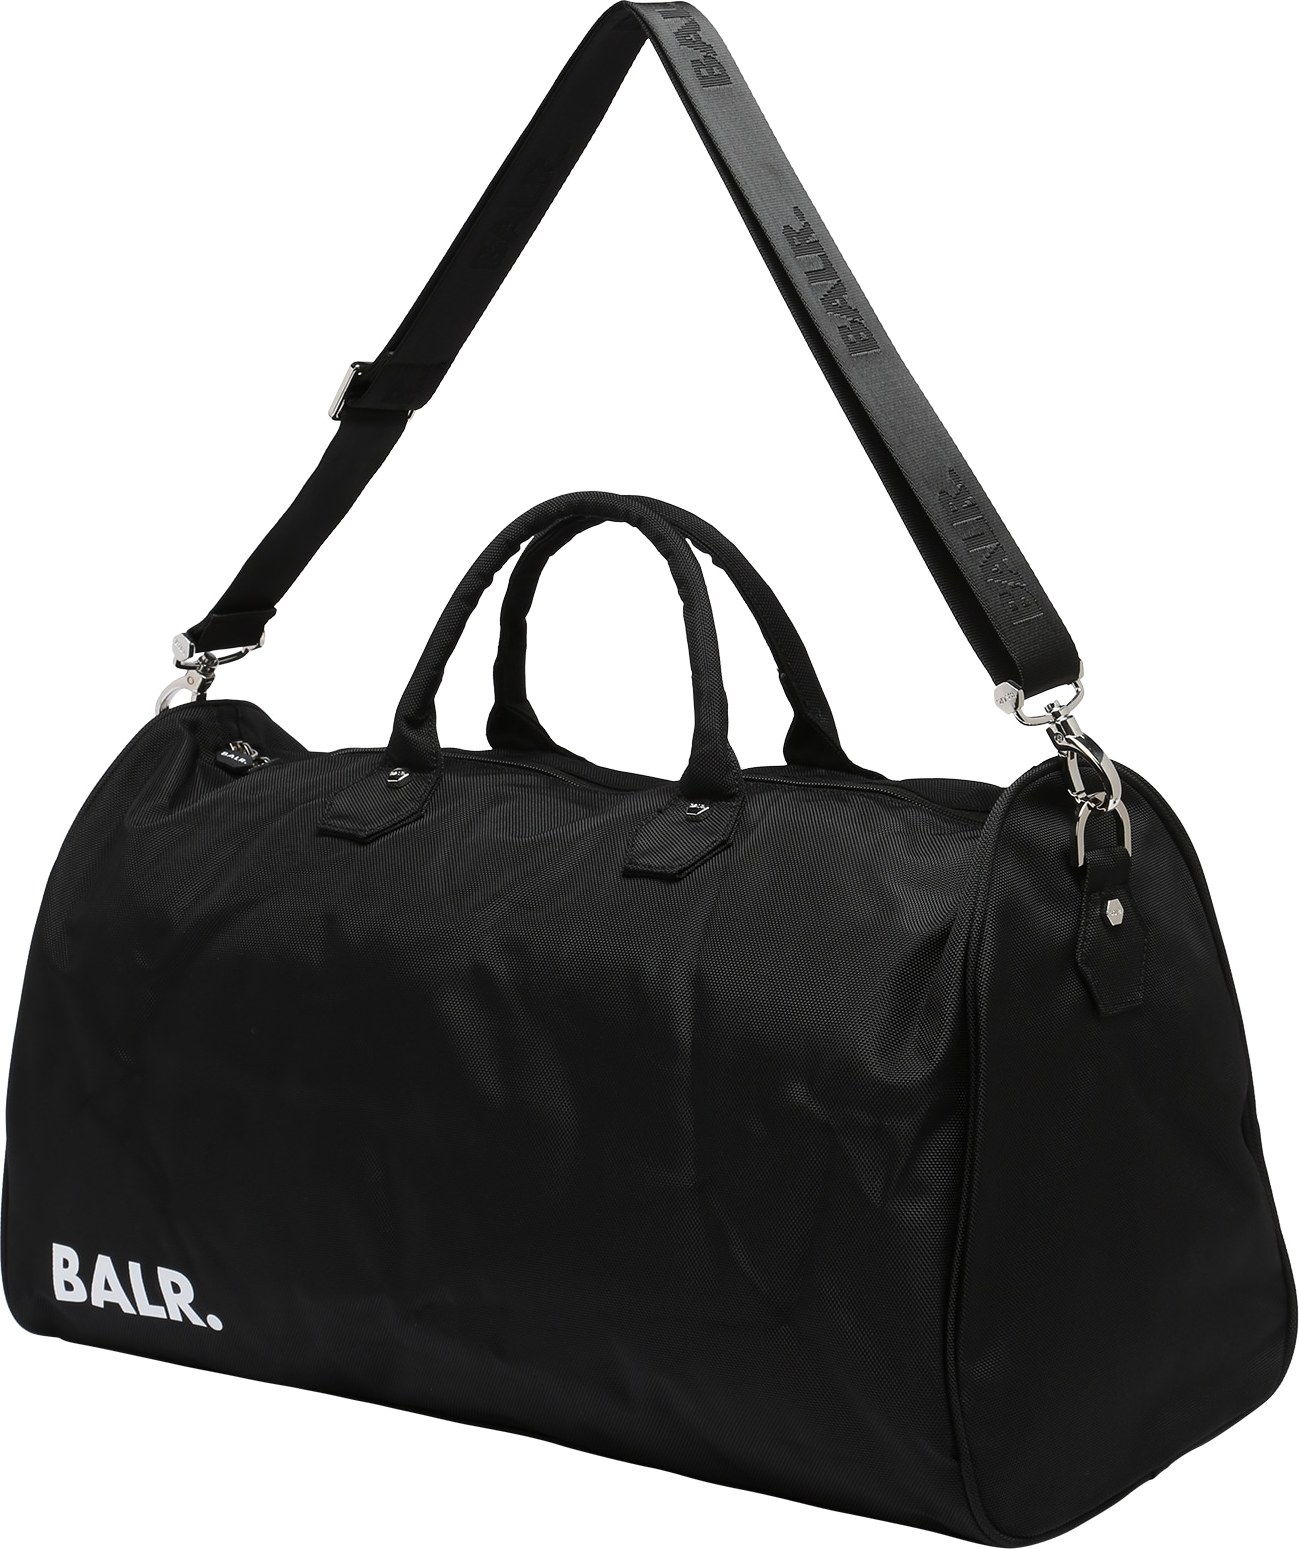 BALR. Cestovní taška černá / bílá